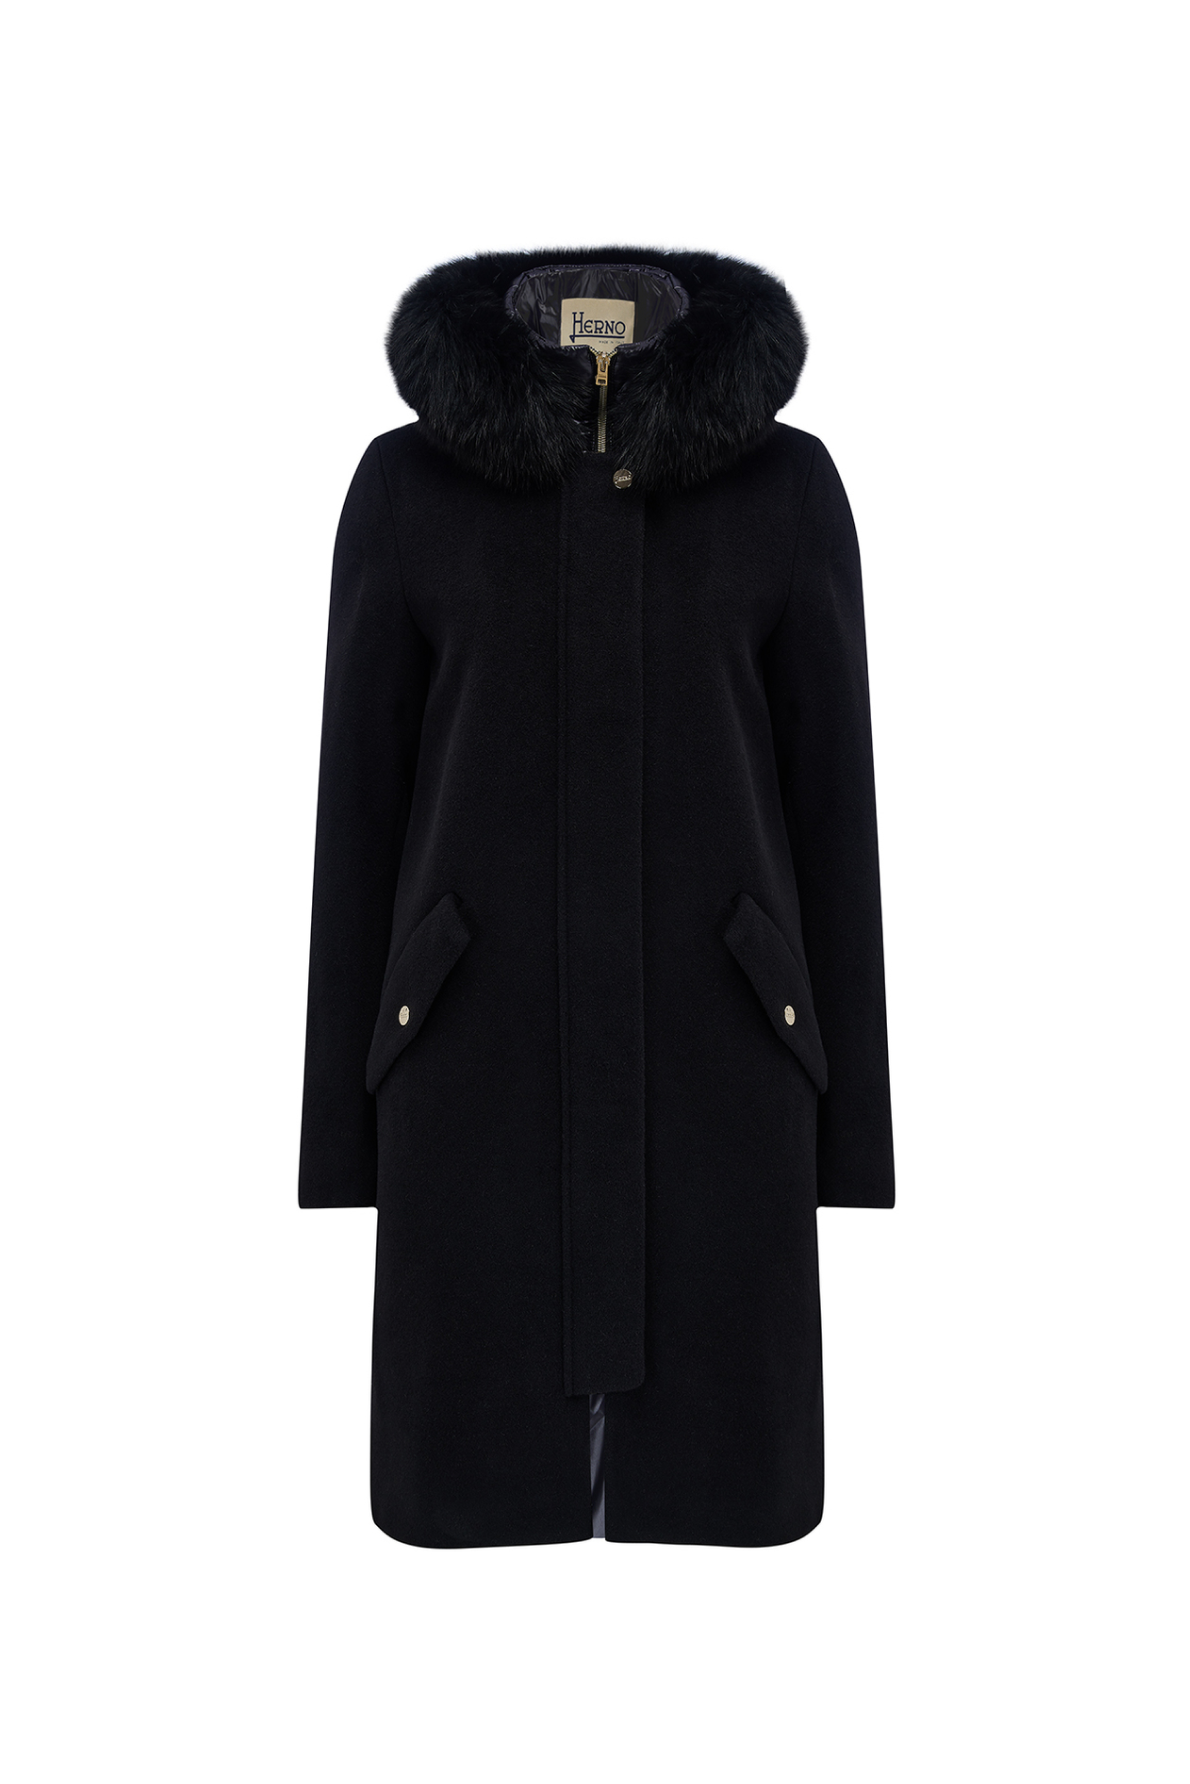 Herno Women’s Alpaca Wool Coat Black - W22 Collection